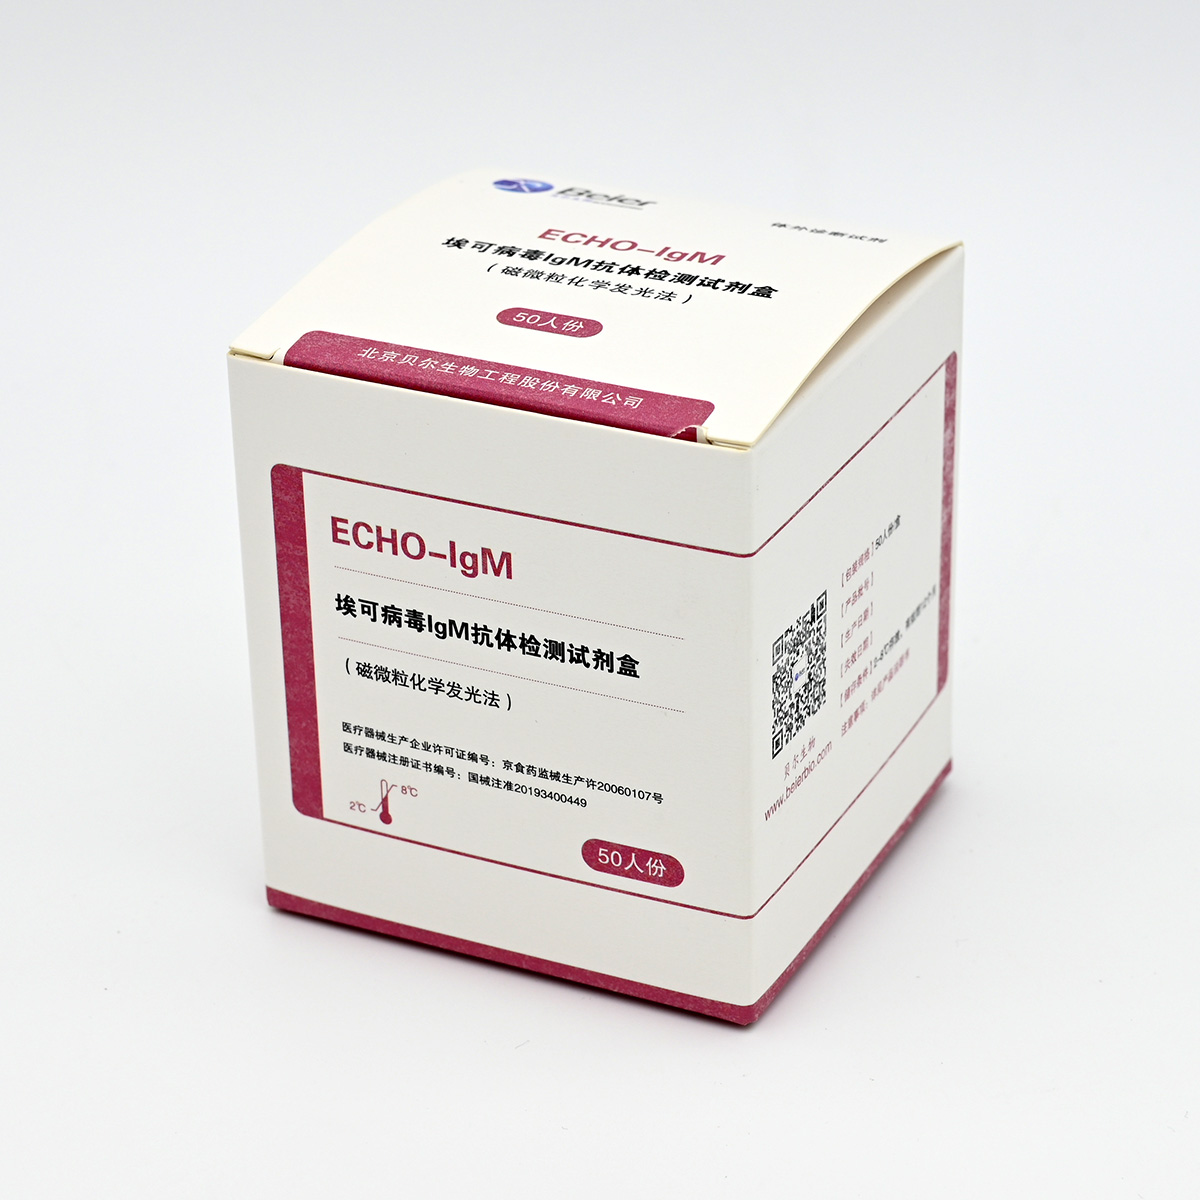 【贝尔】埃可病毒lgM抗体检测试剂盒(磁微粒化学发光法)